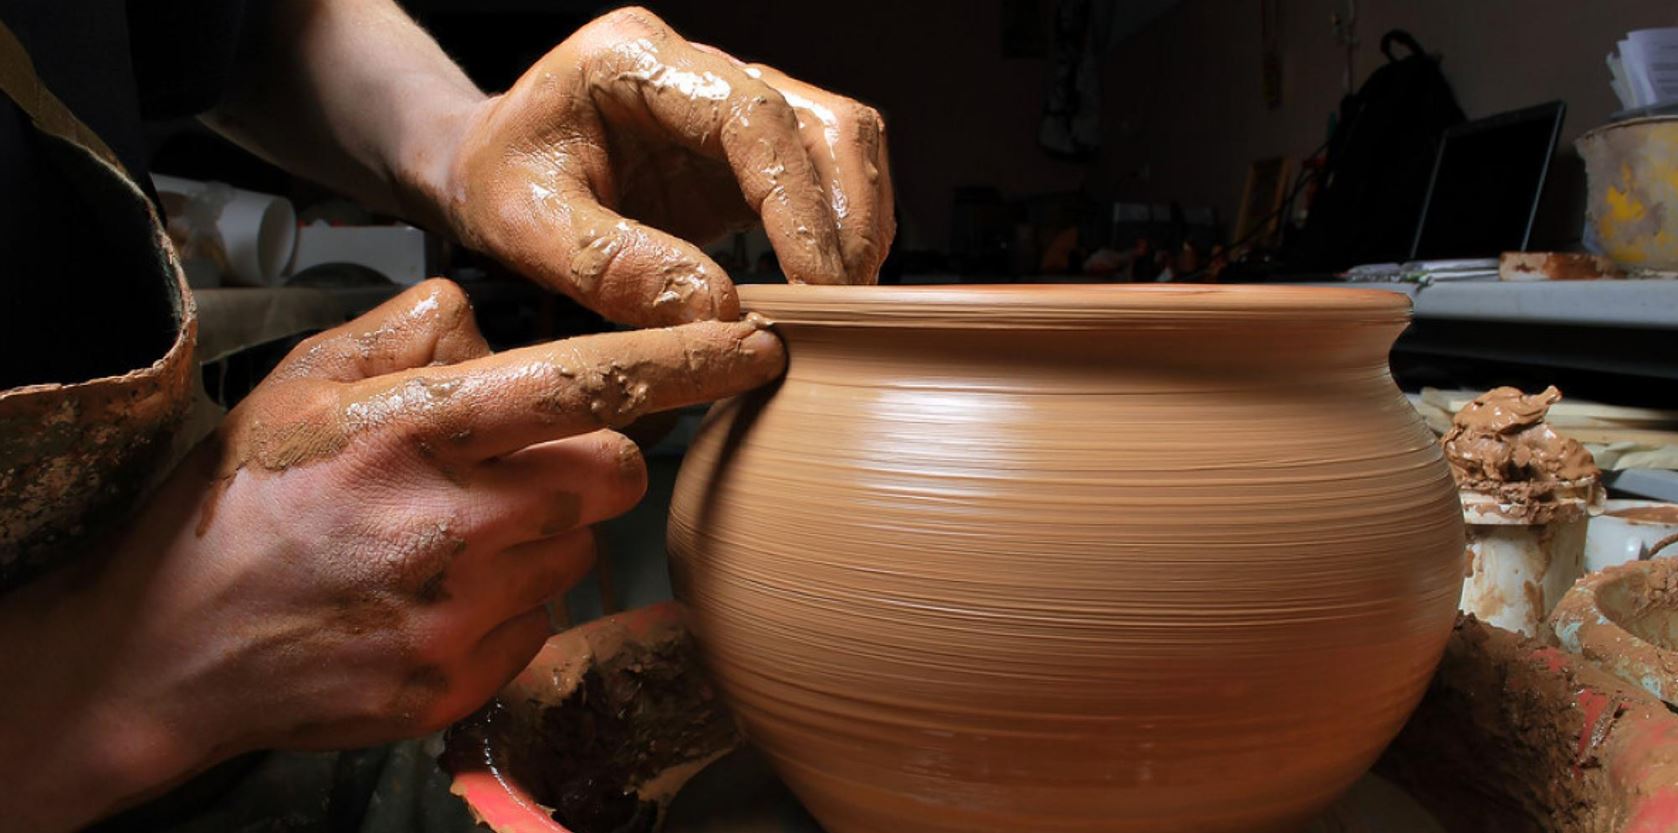 niche site ideas - pottery 